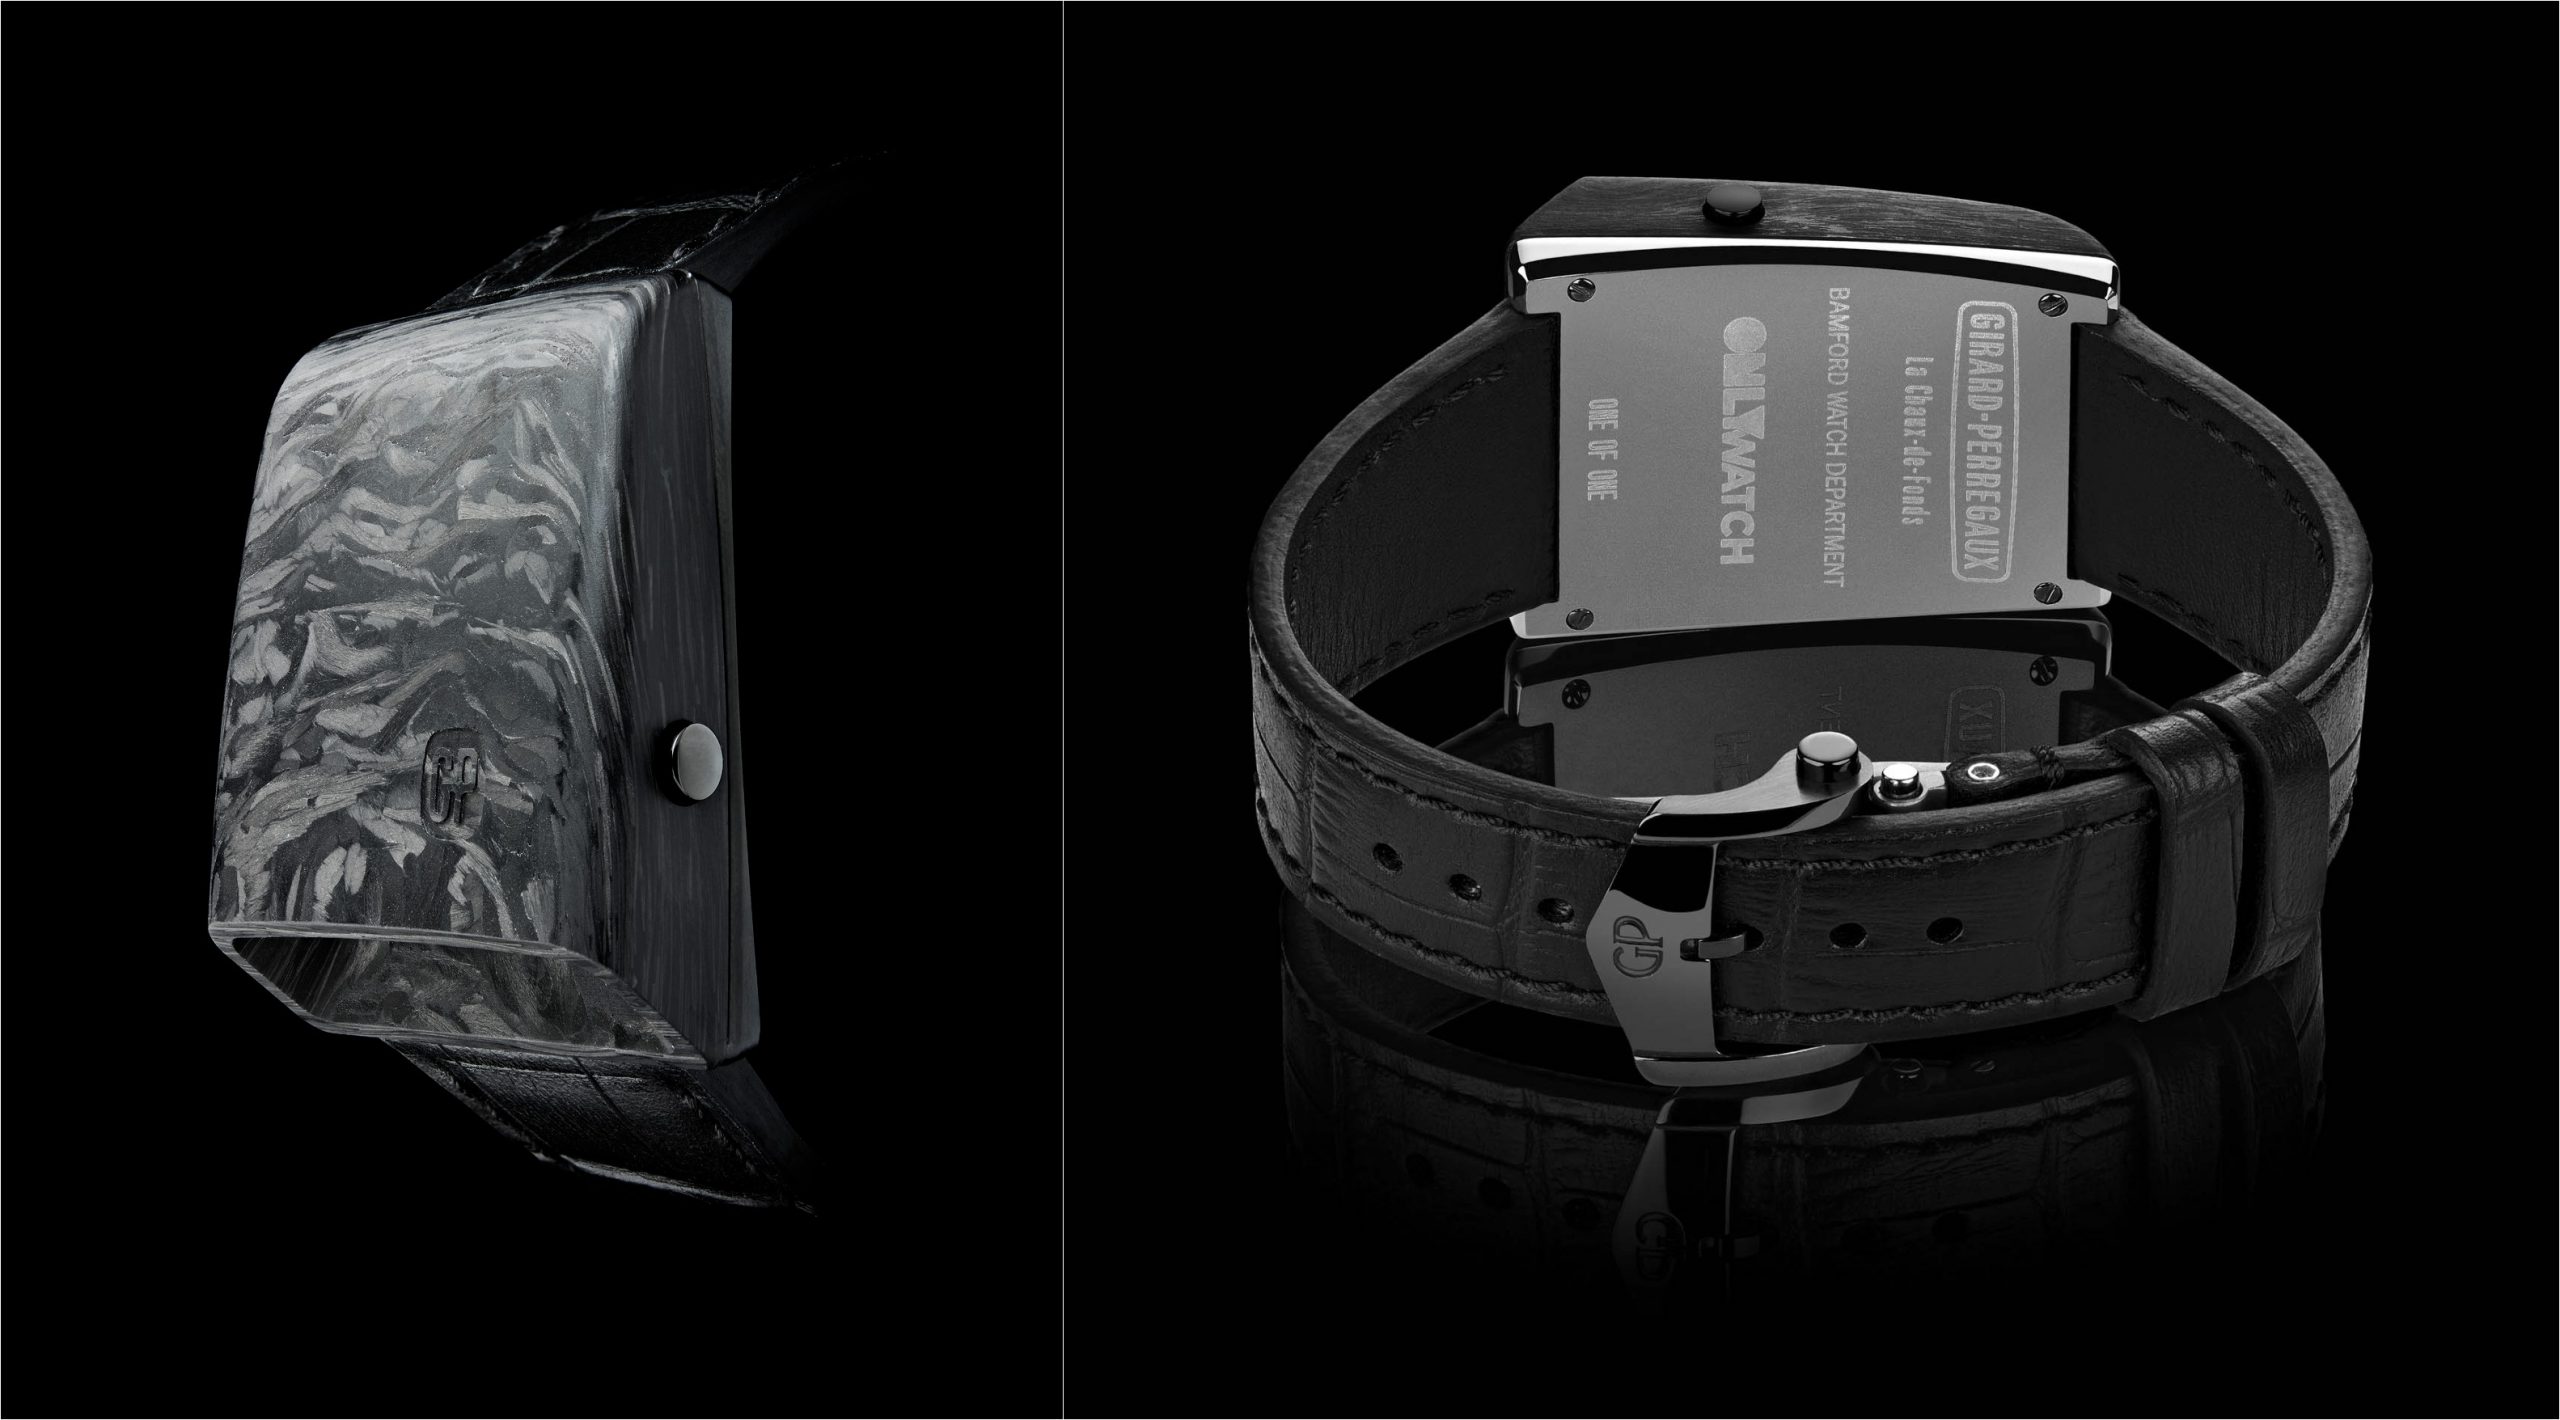 Girard-Perregaux X Bamford Watch Department Casquette Only Watch นาฬิกาที่ผลิตเพียงเรือนเดียวในโลกเพื่อองค์กรการกุศล Only Watch เพื่อการวิจัยและรักษาโรคกล้ามเนื้ออ่อนแรง